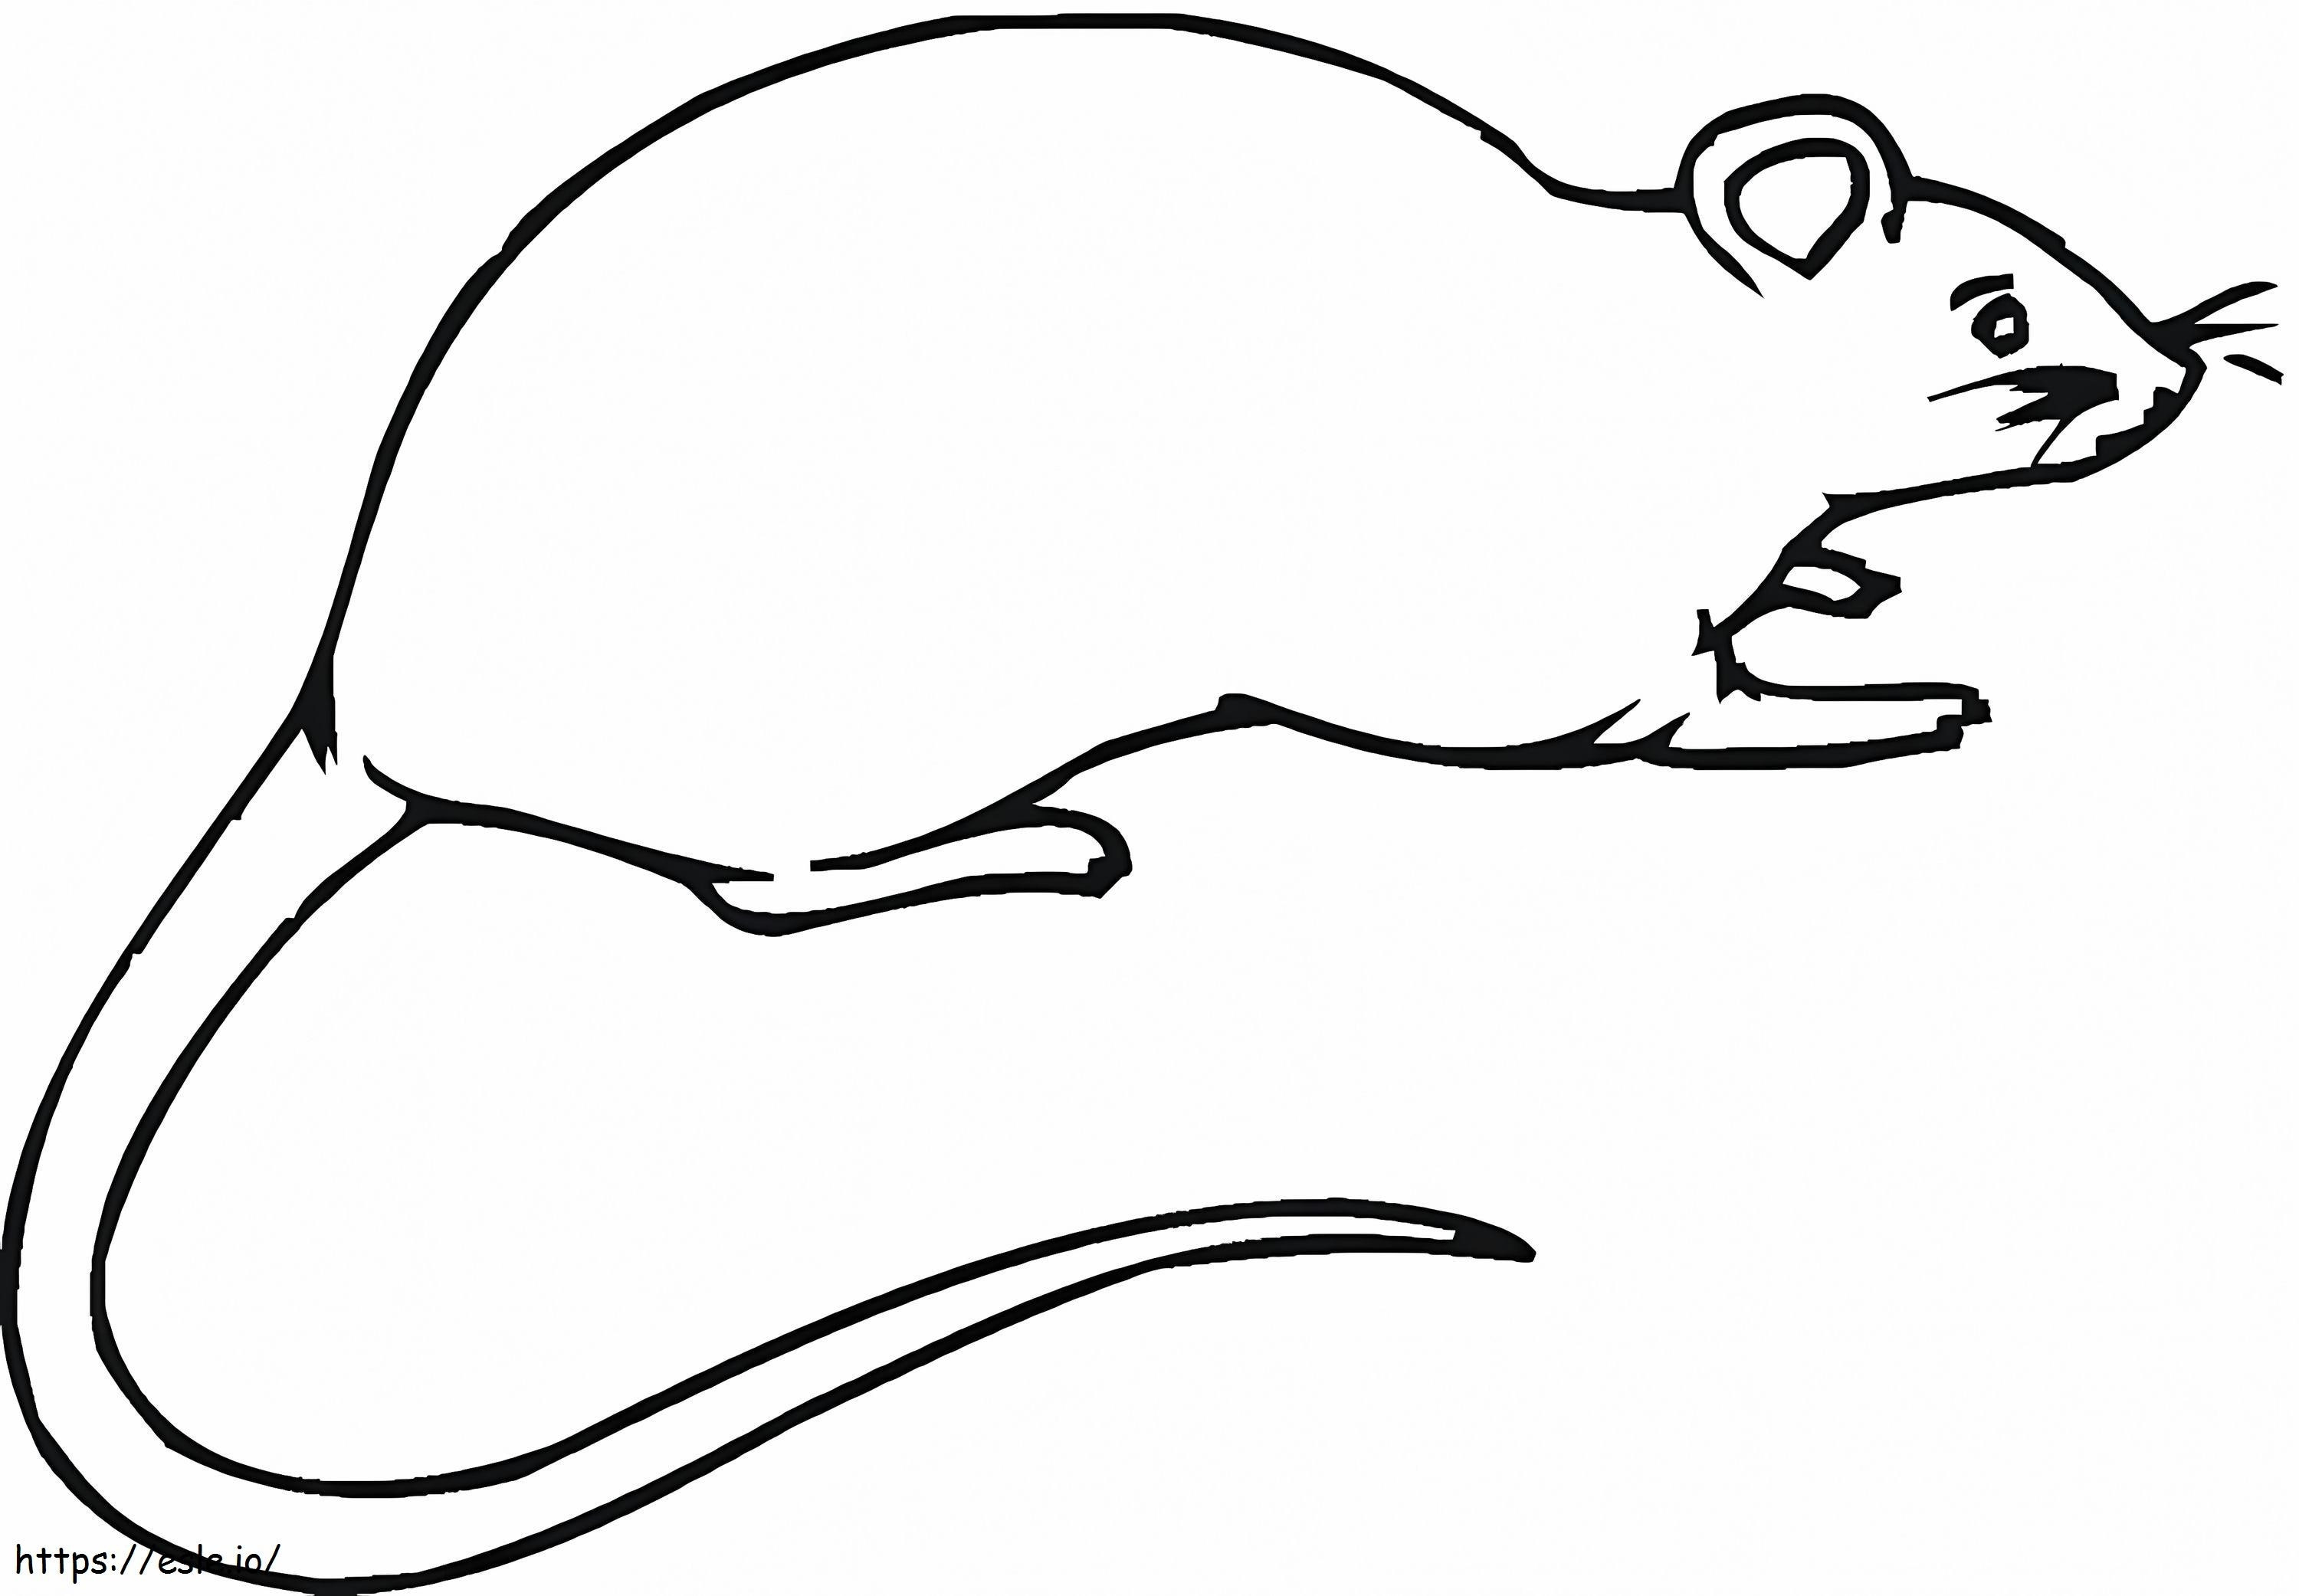 Coloriage Rat gratuit à imprimer dessin